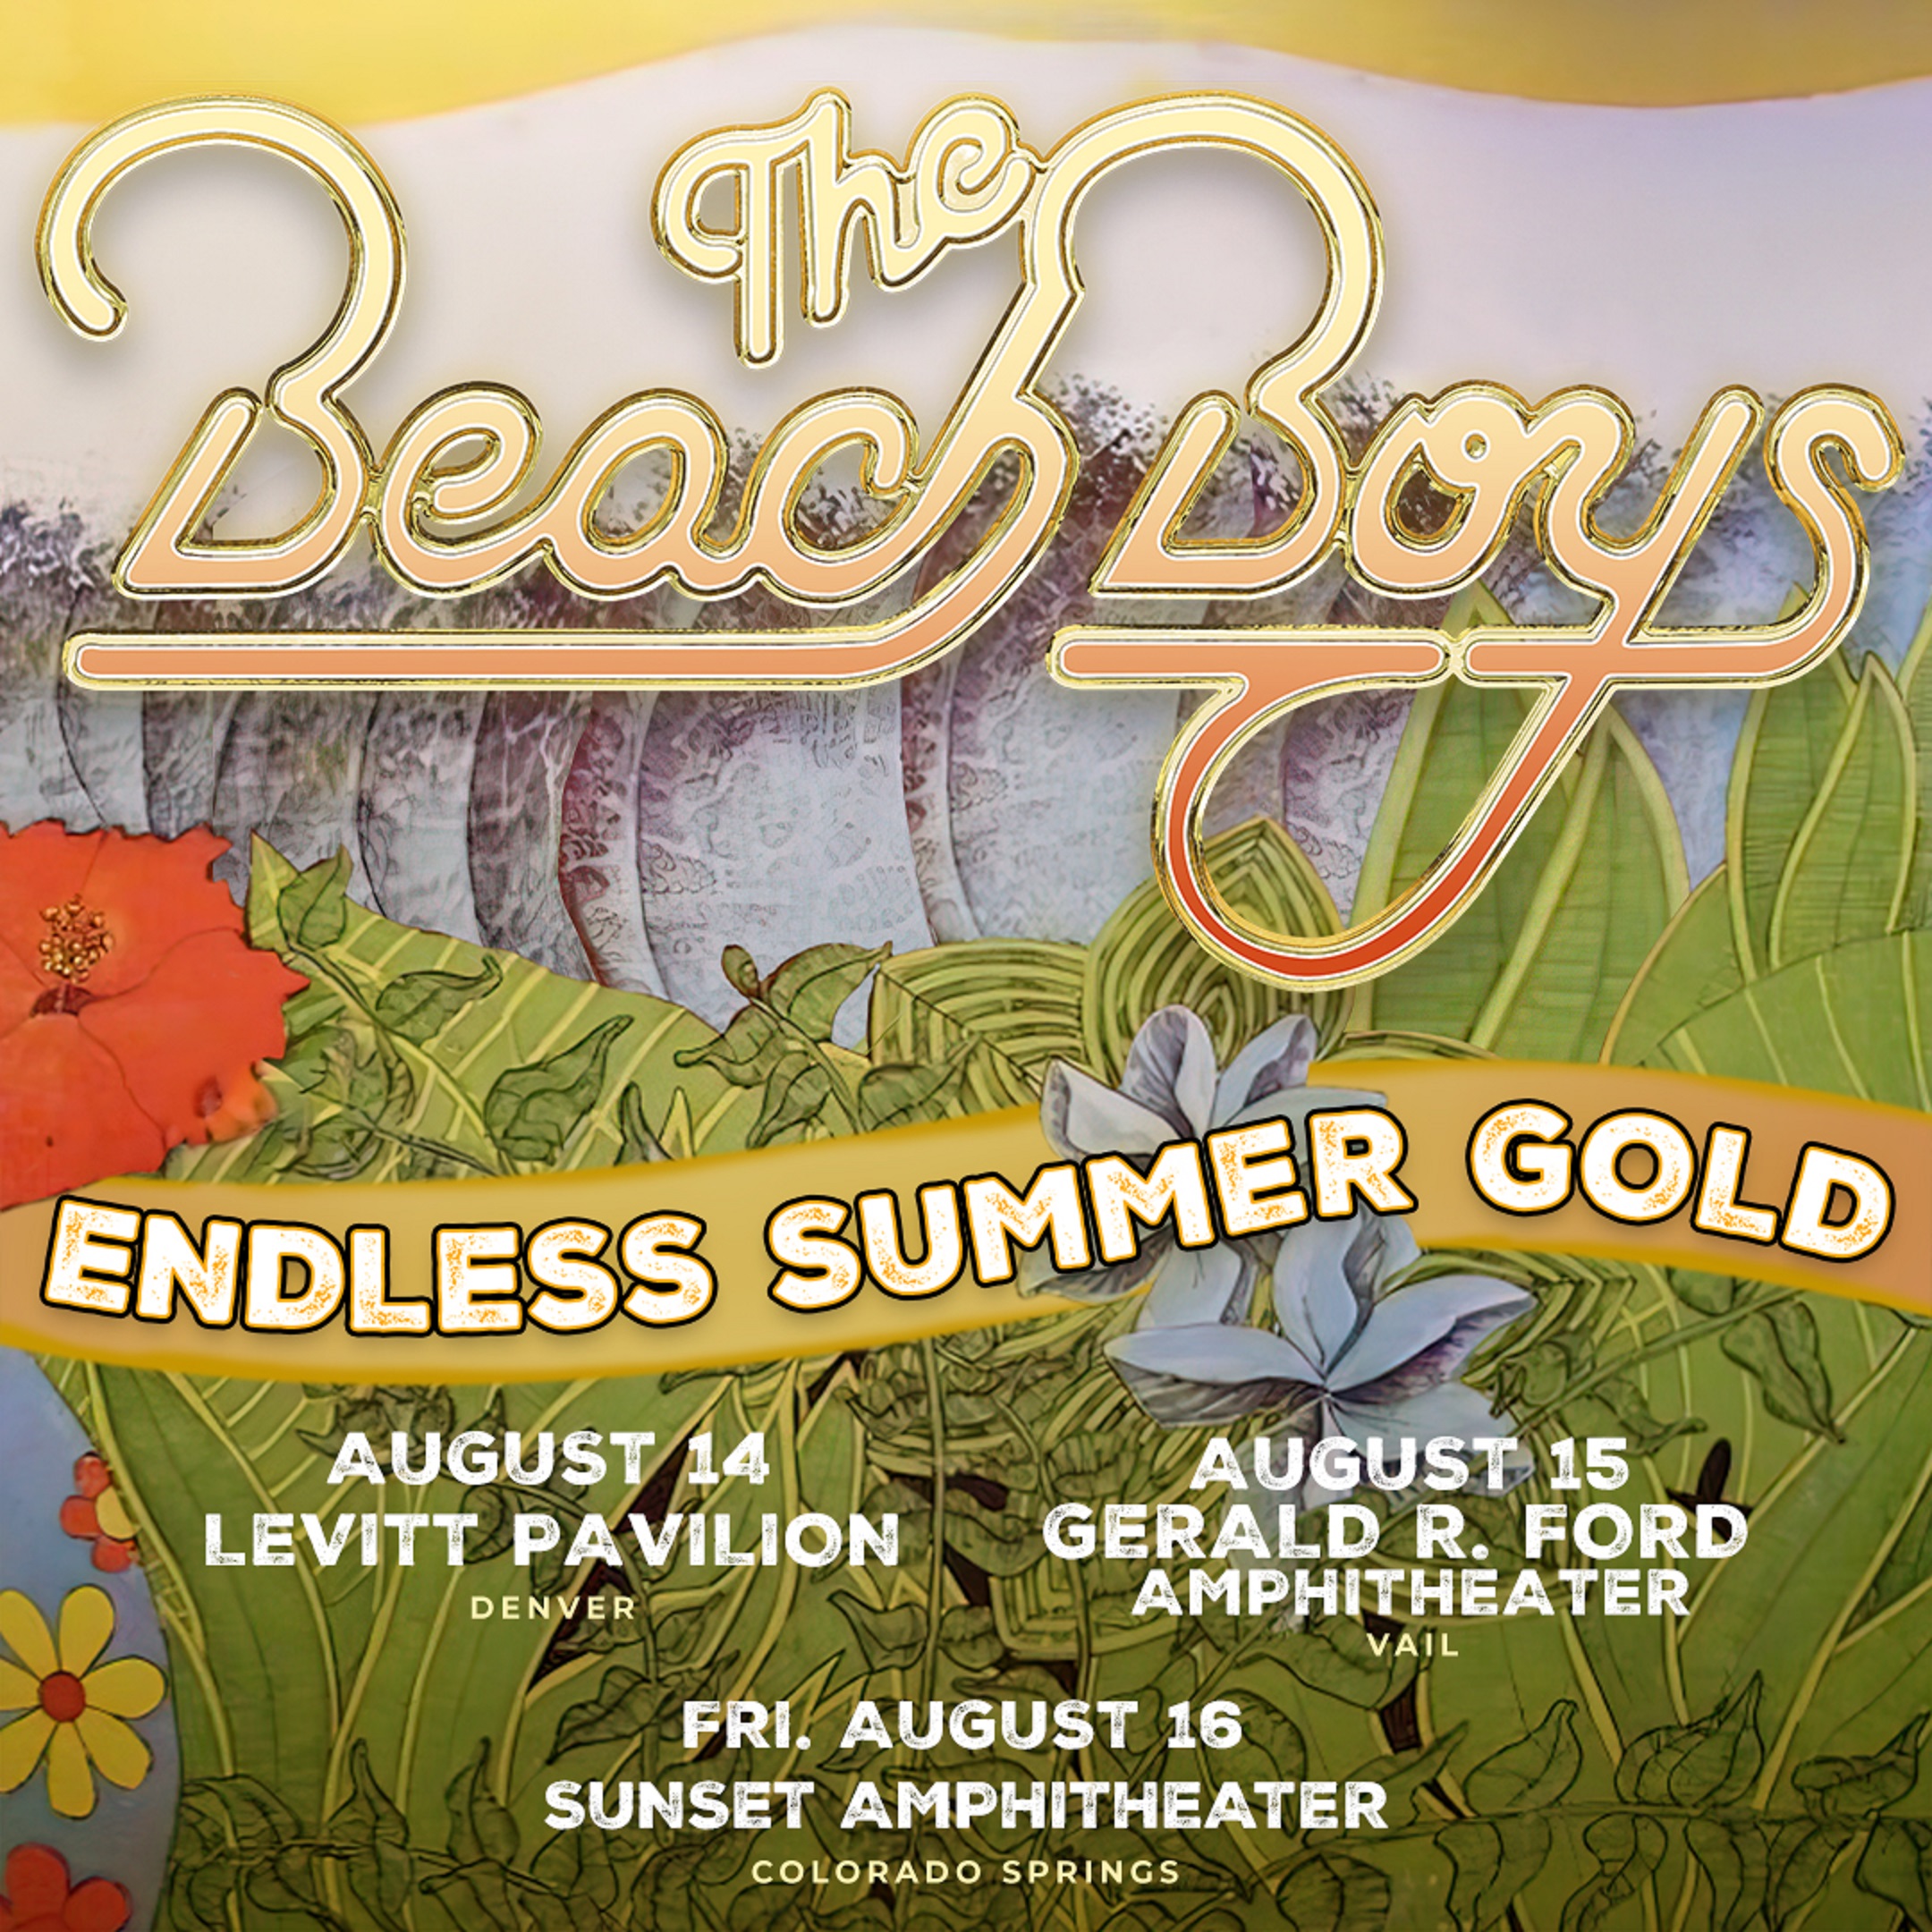 THE BEACH BOYS ANNOUNCE THEIR “ENDLESS SUMMER GOLD” 2024 TOUR